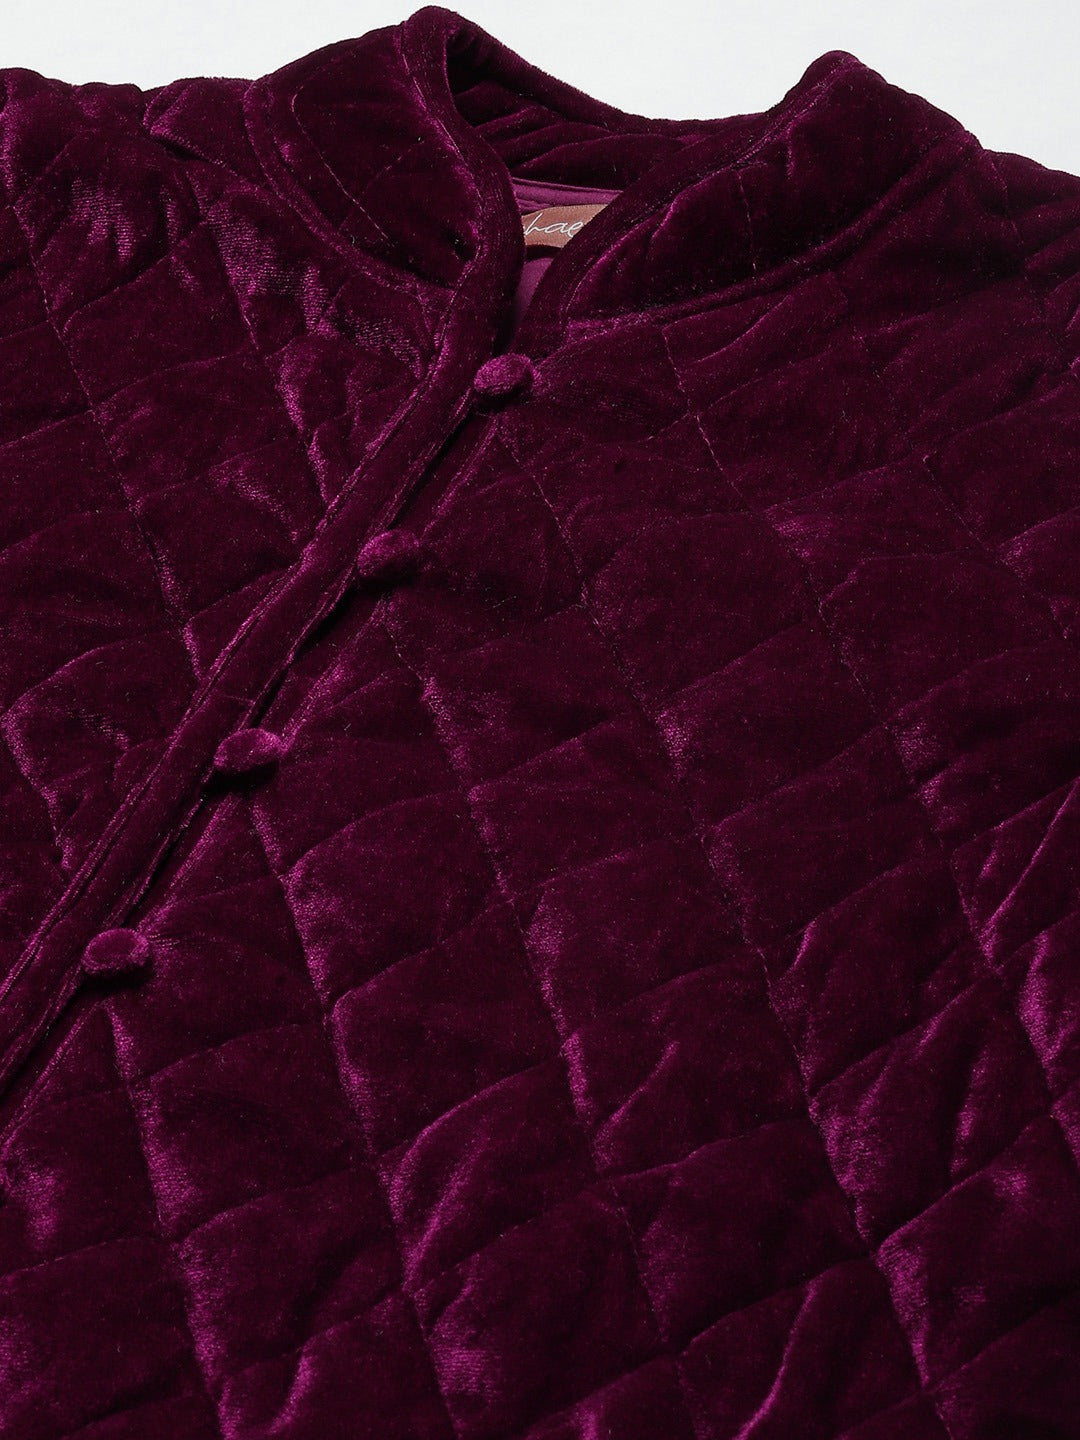 Women Burgundy Velvet Full Sleeve Quilted Jacket